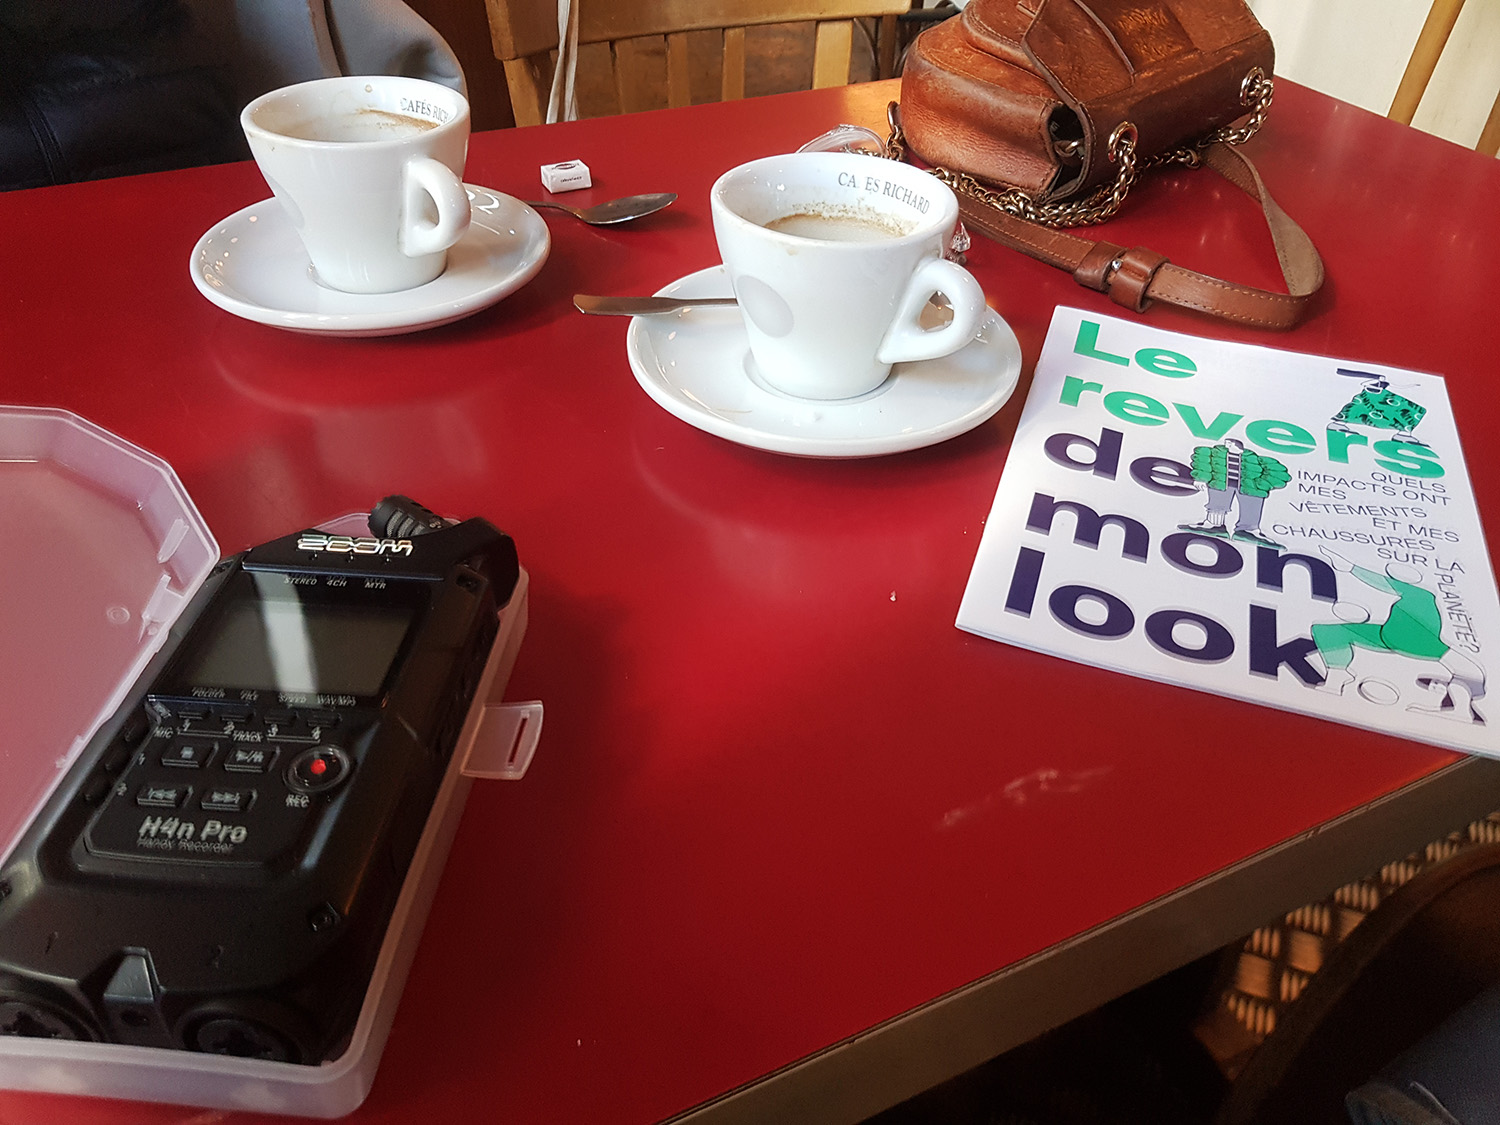 Le café est un peu bruyant, mais l’interview se déroule sans encombre, autour d’un café © Globe Reporters